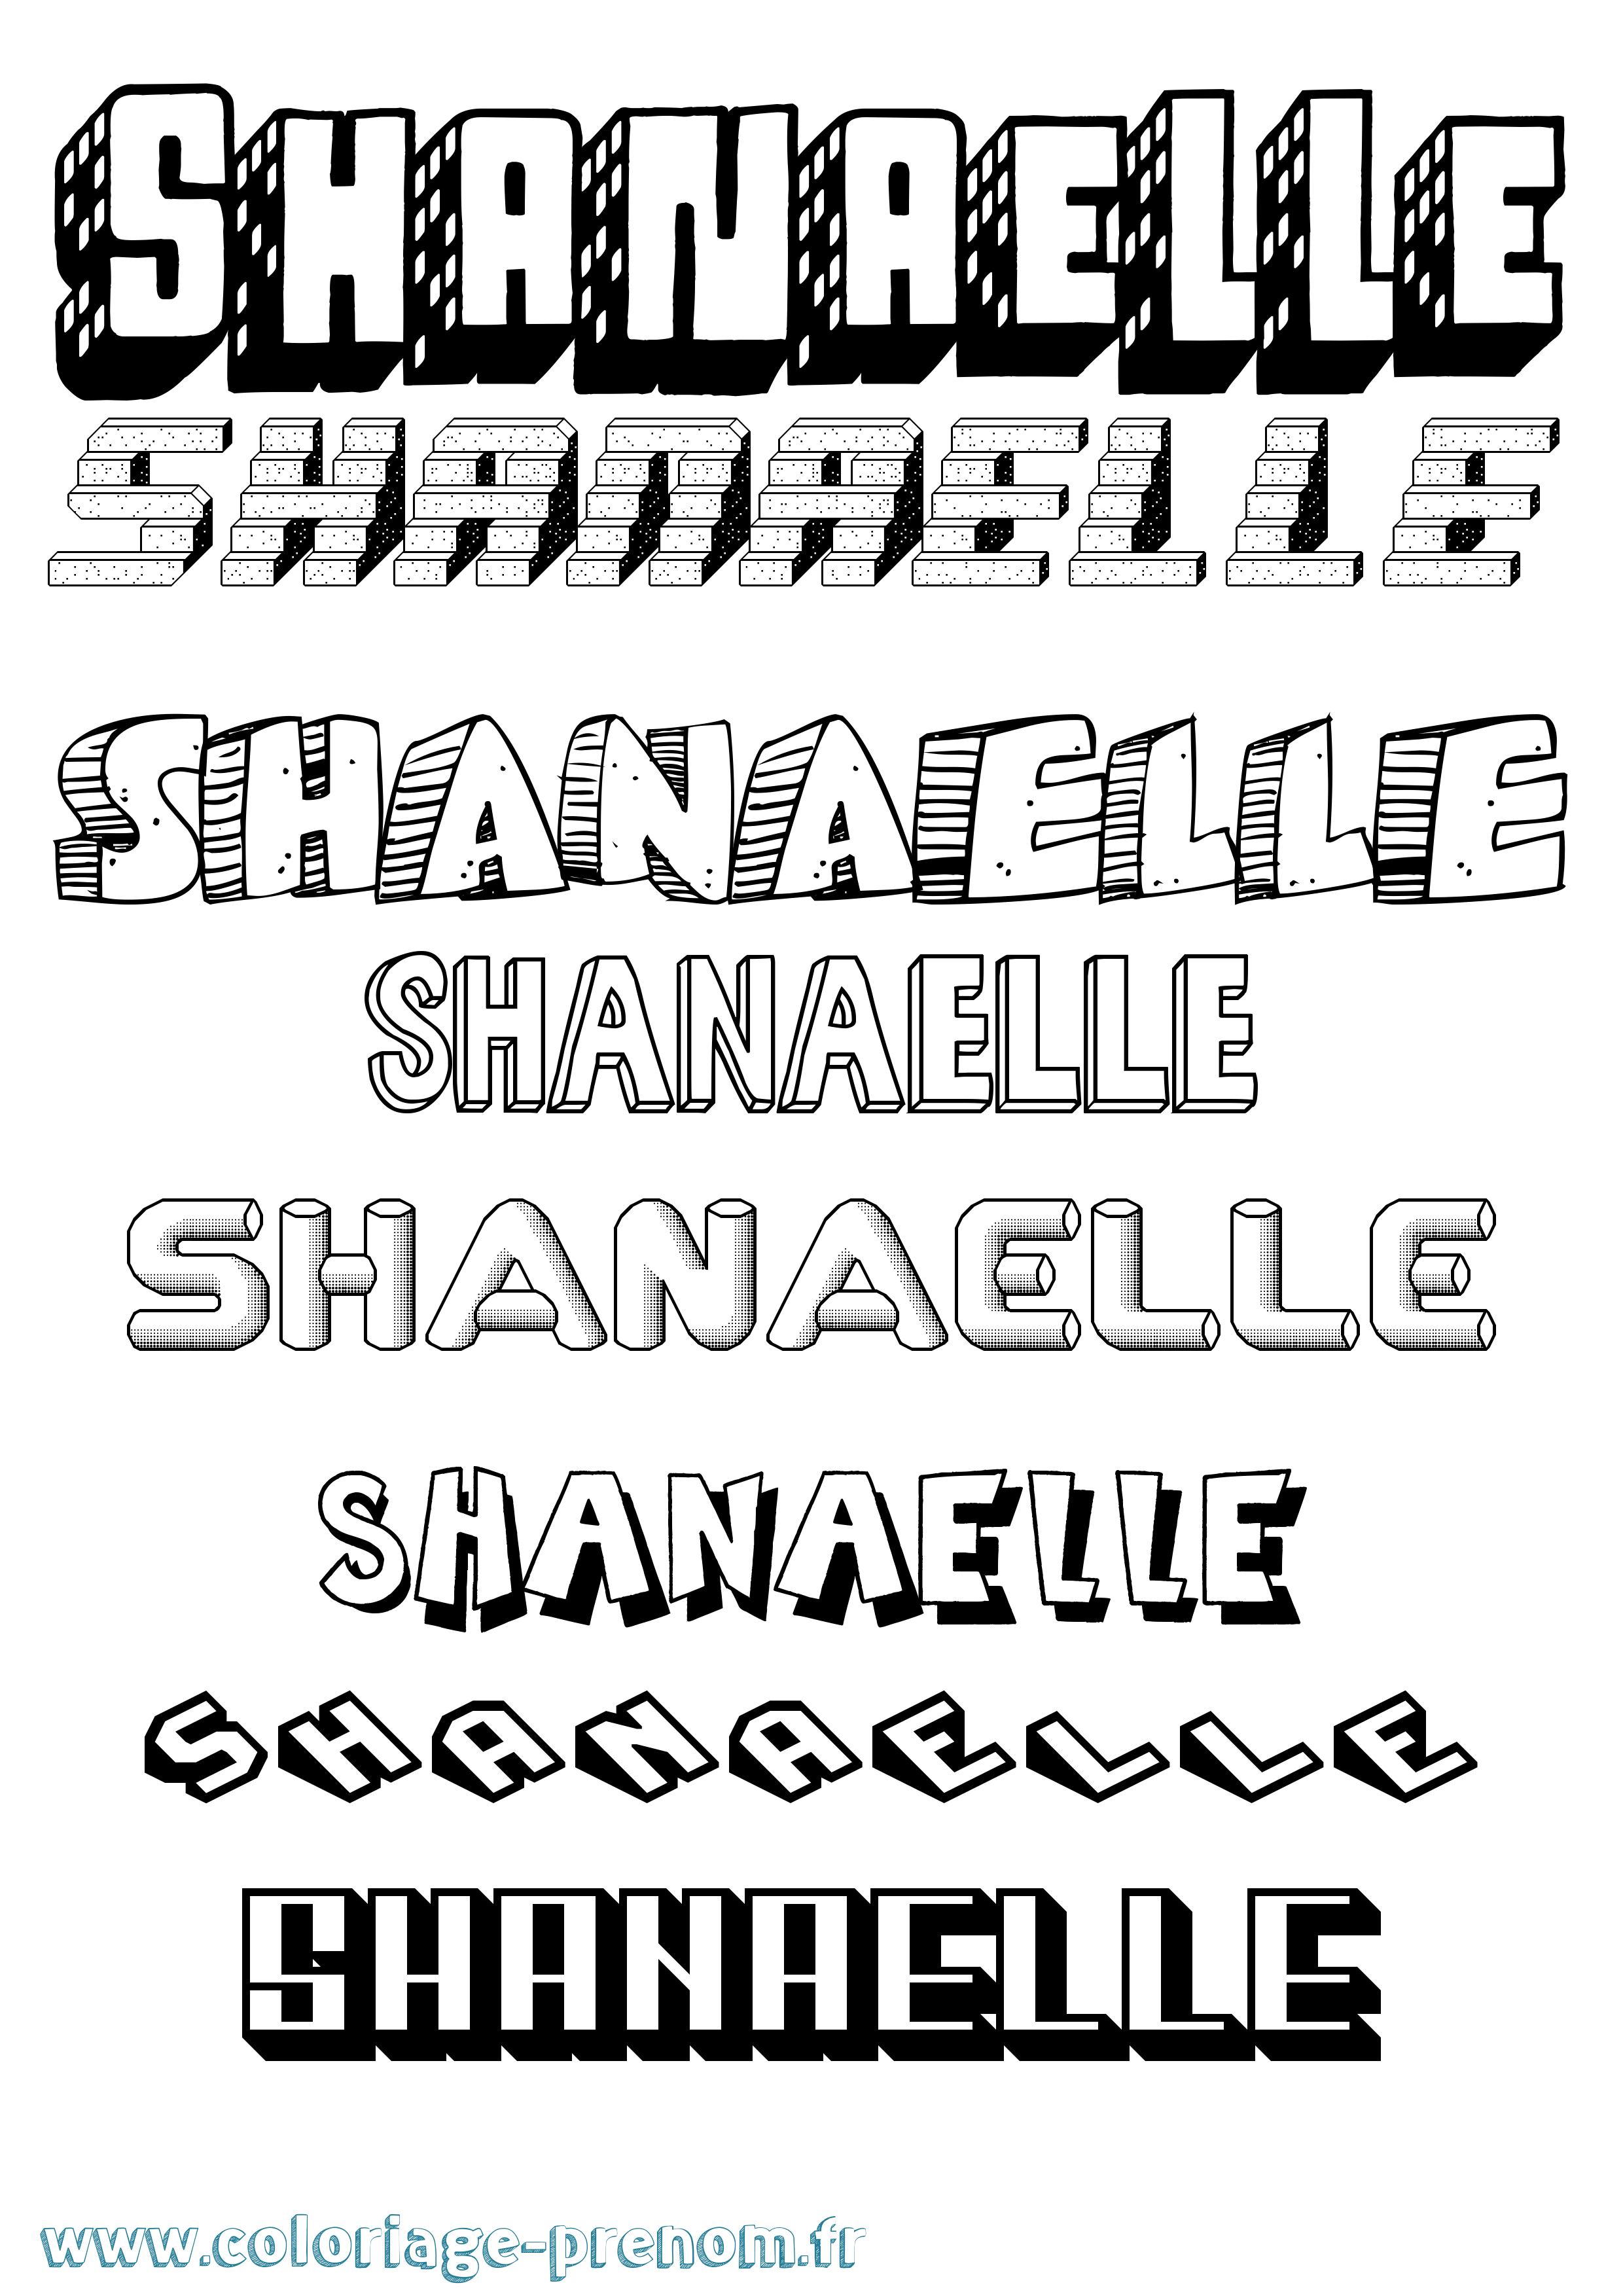 Coloriage prénom Shanaelle Effet 3D